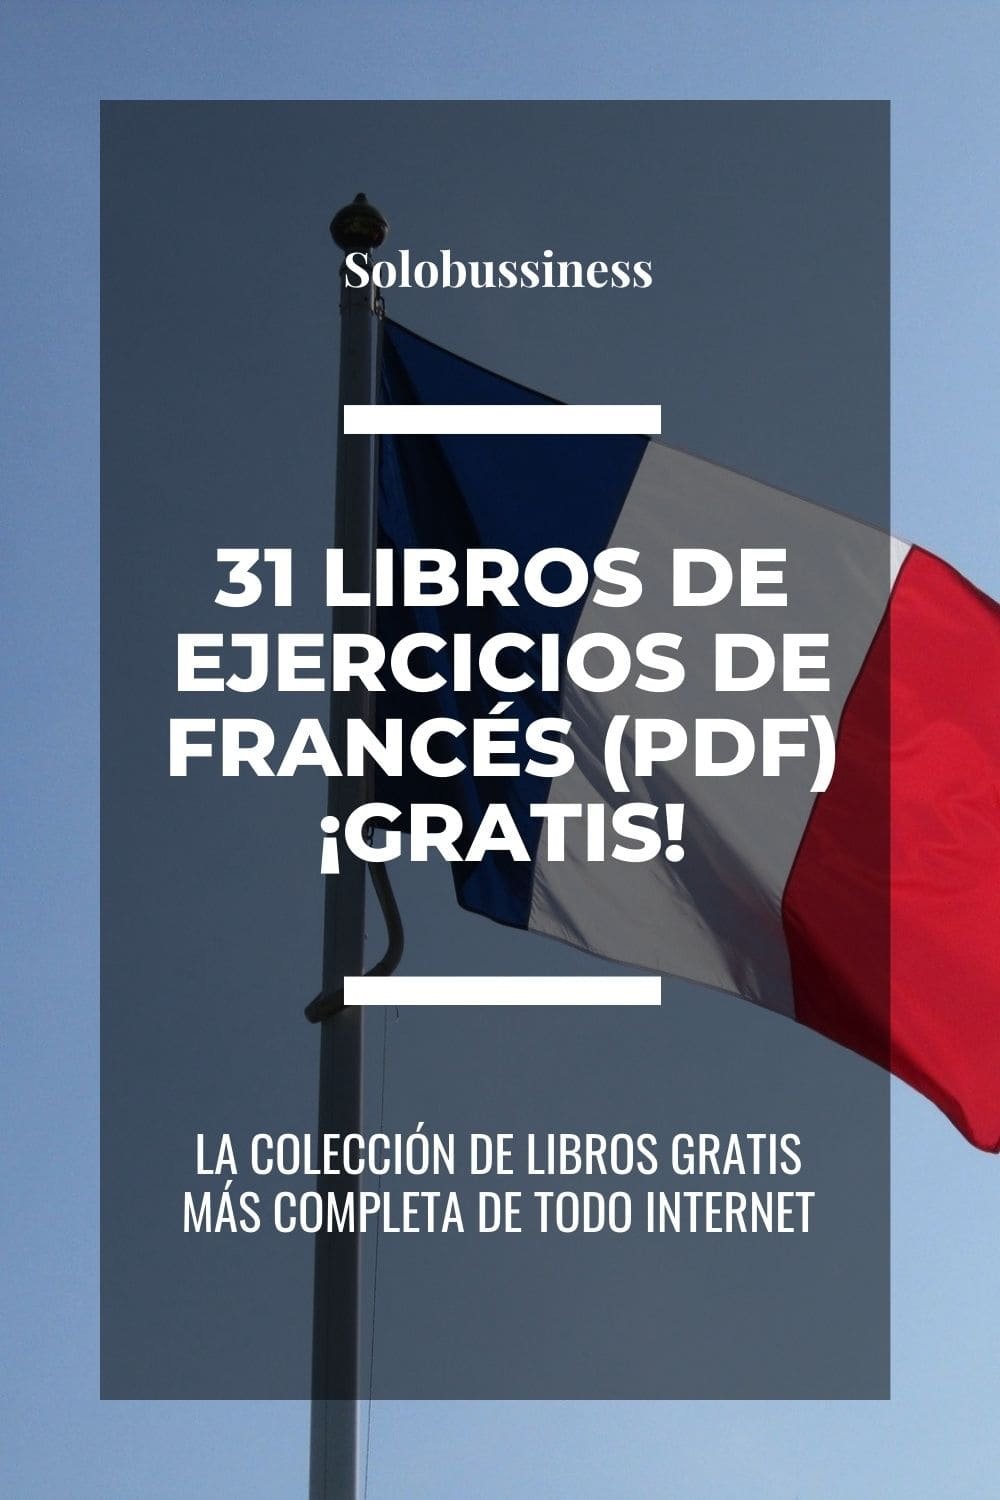 Libros de Ejercicios de Francés en formato pdf